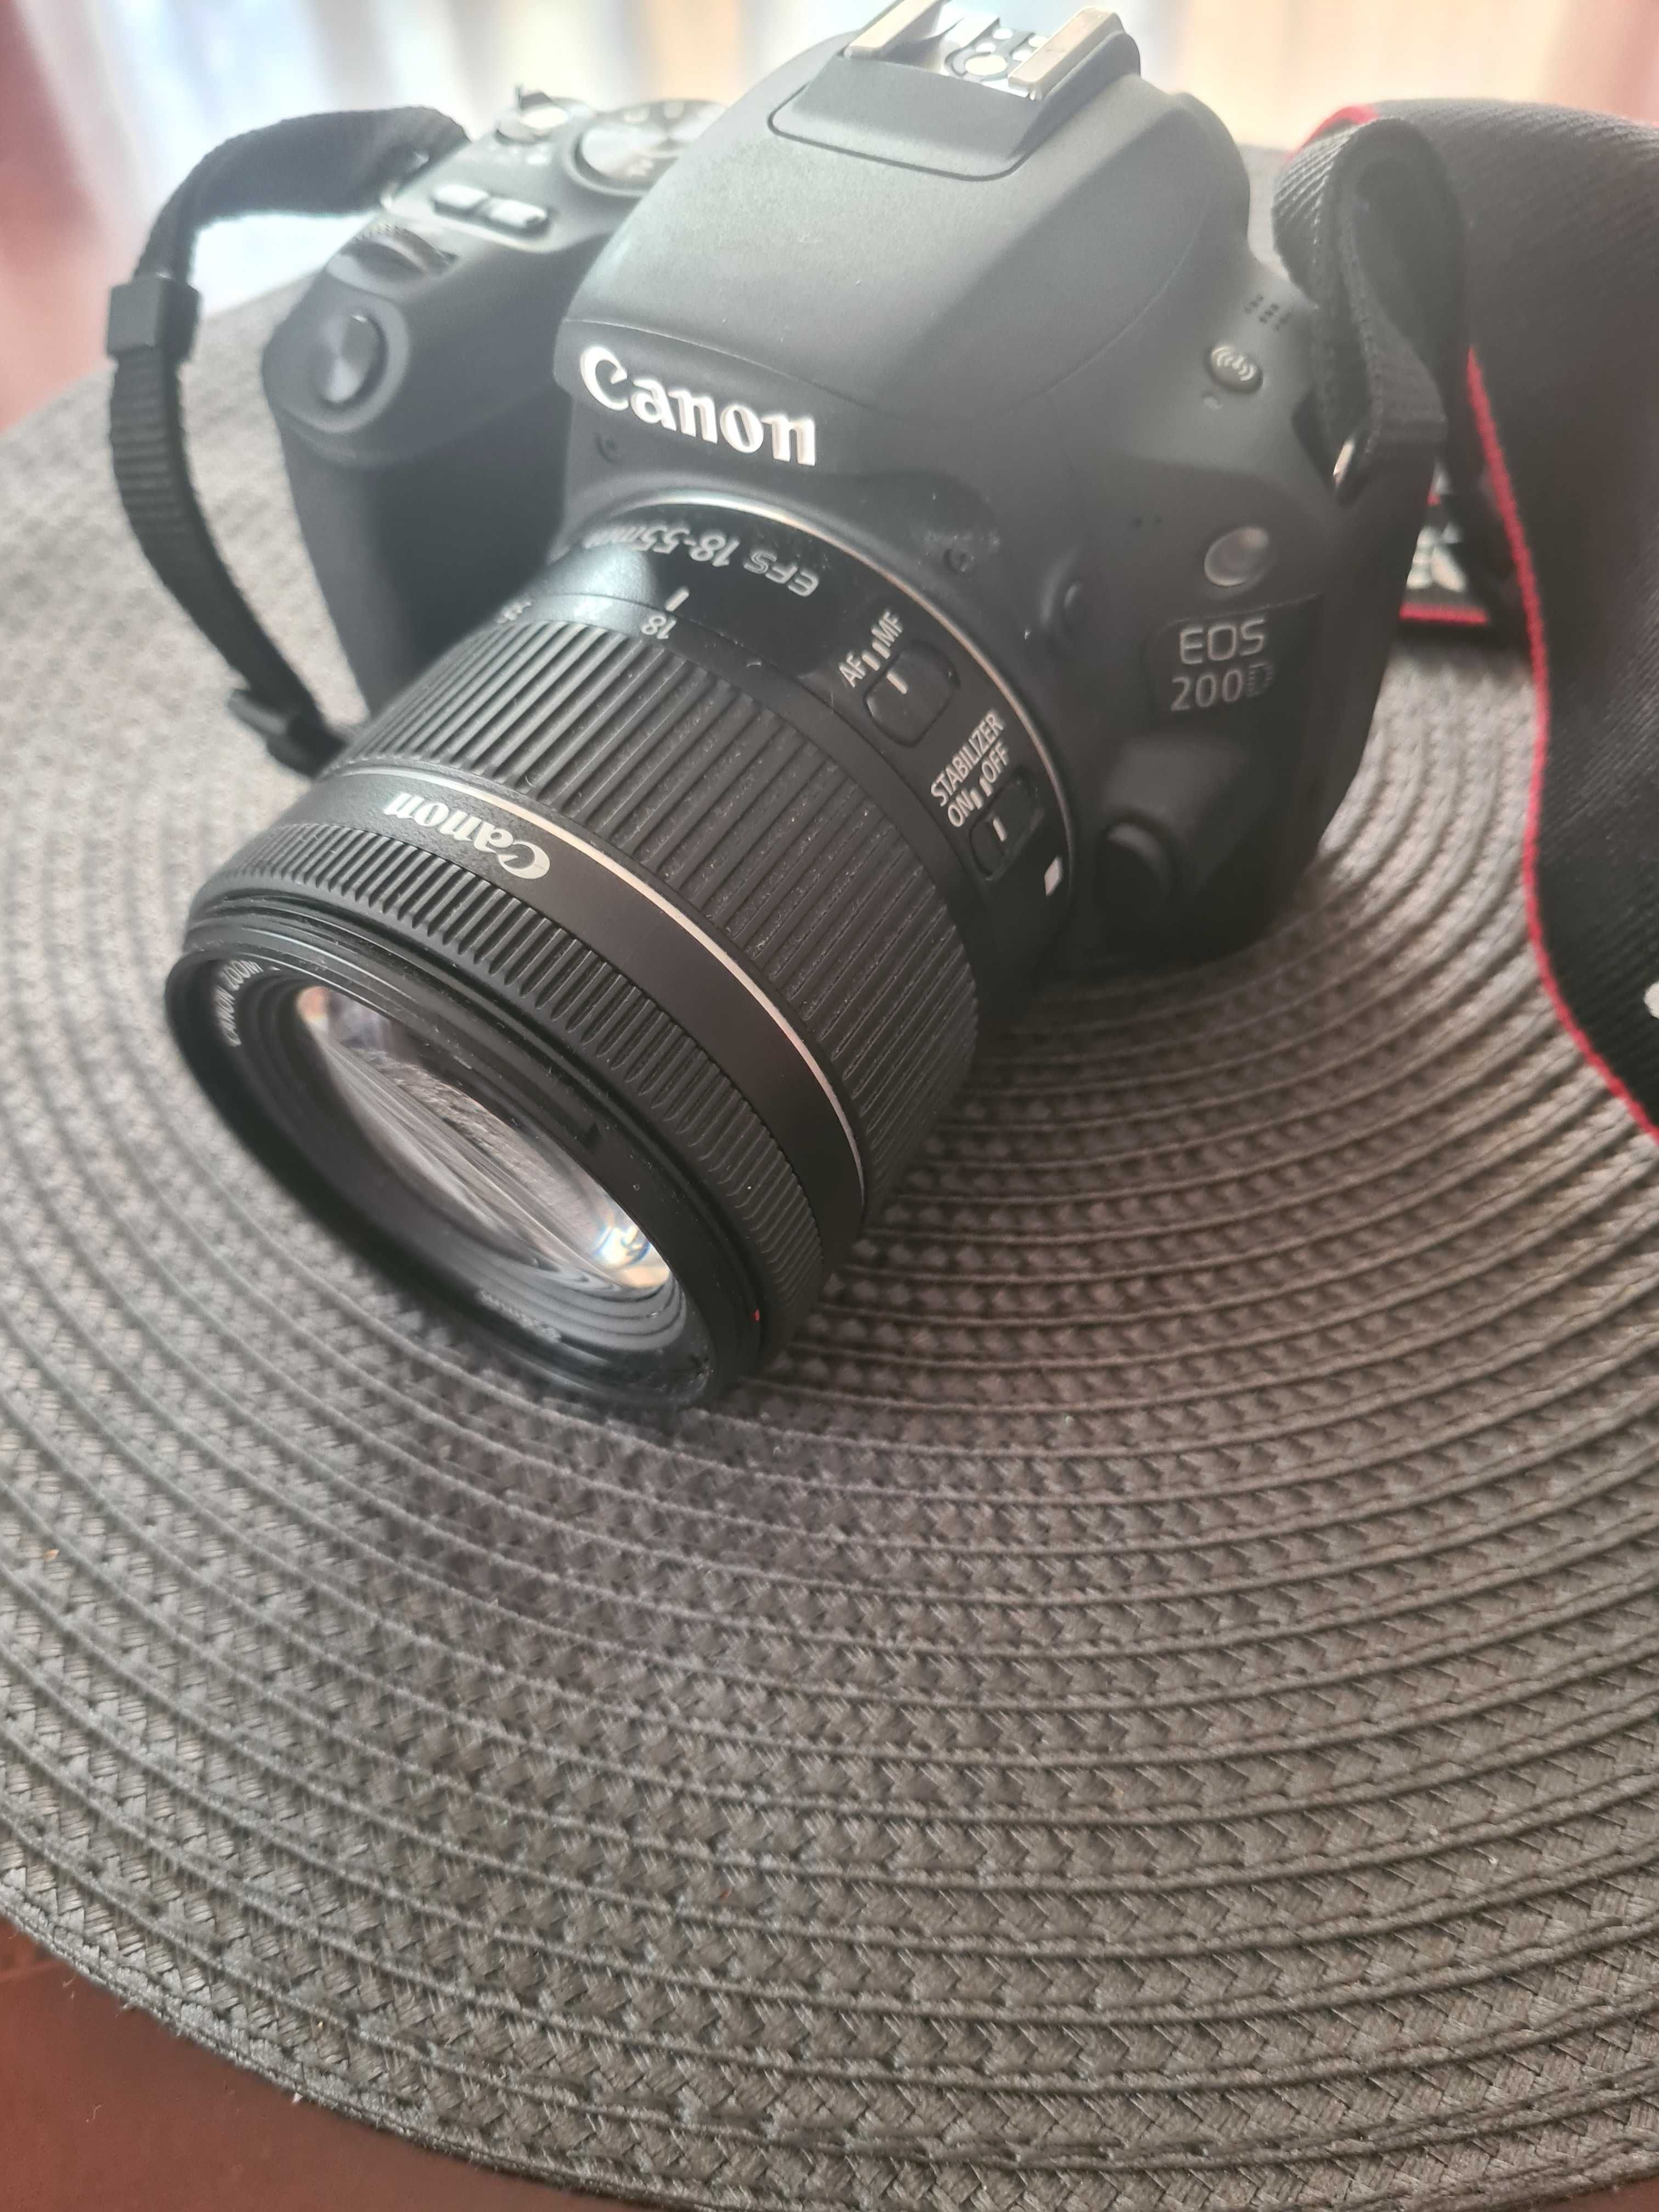 Aparat Canon EOS 200D